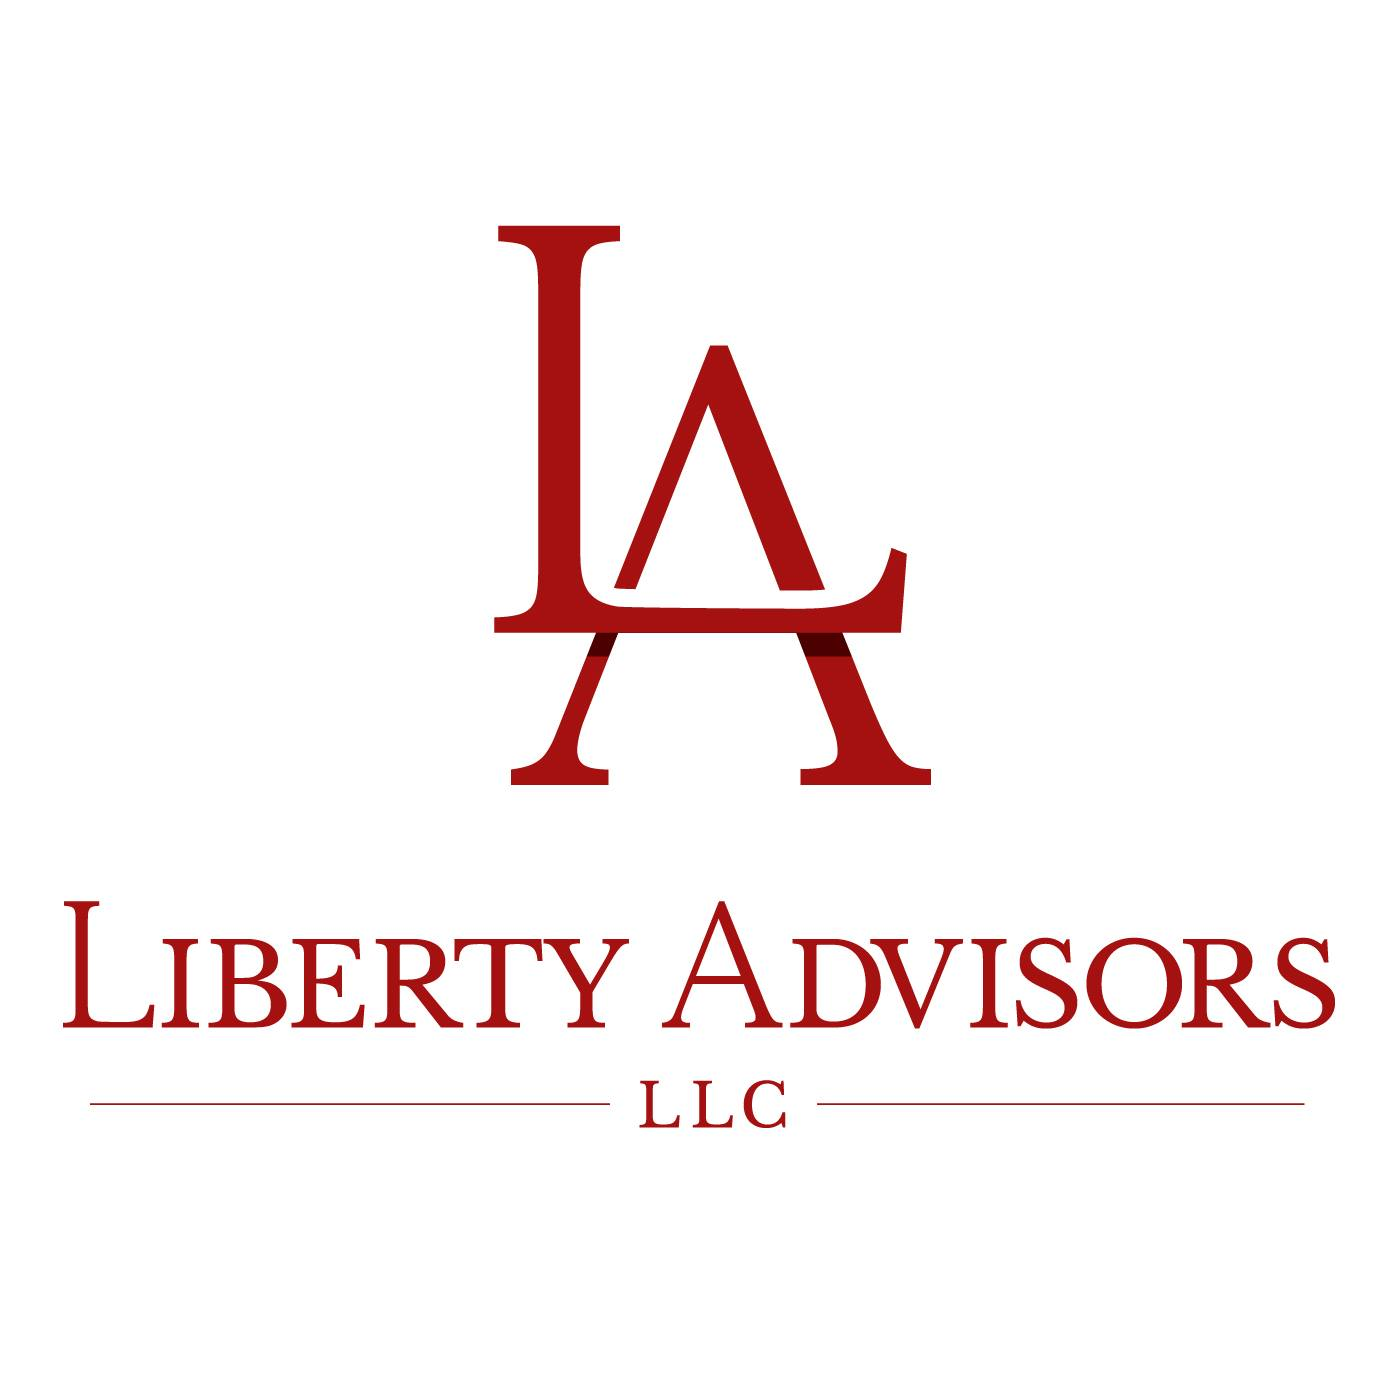 Liberty Advisors LLC'